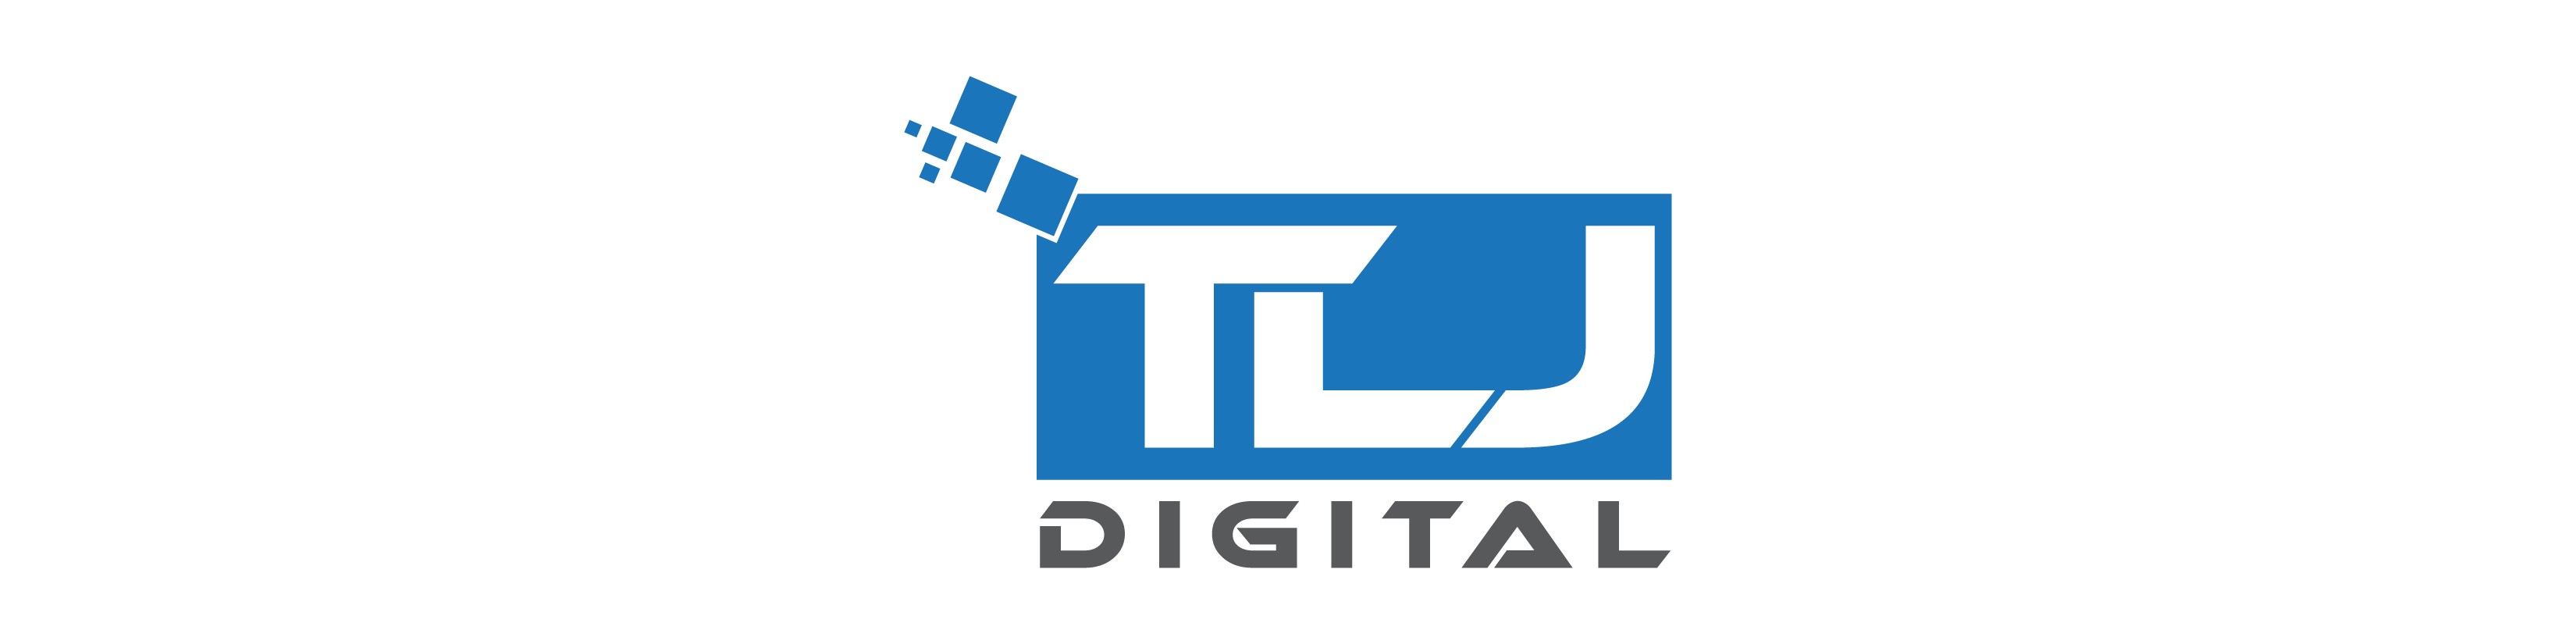 TLJ Digital